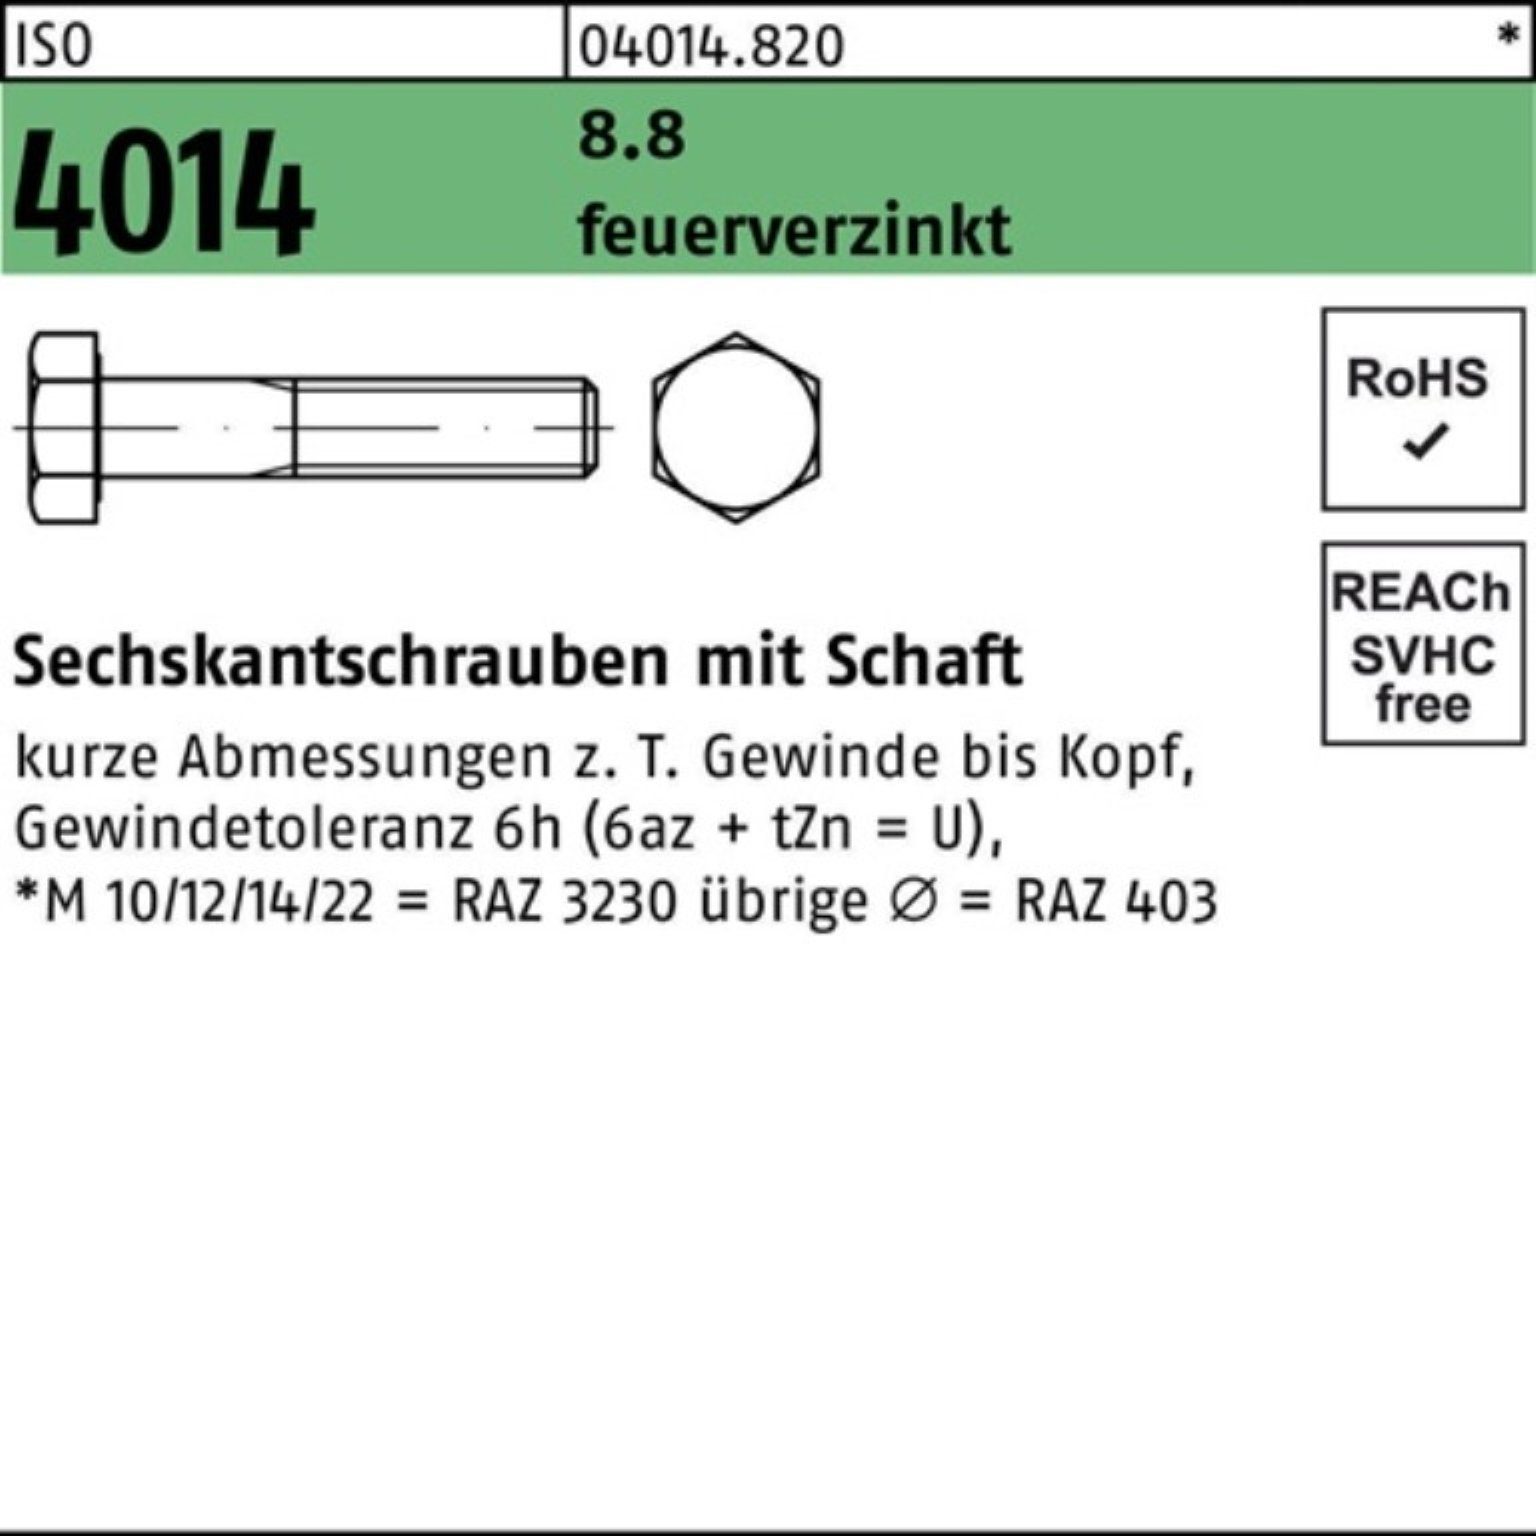 ISO Bufab 200 Schaft Sechskantschraube Sechskantschraube Pack 4014 feuerverz. M8x 200er 8.8 65